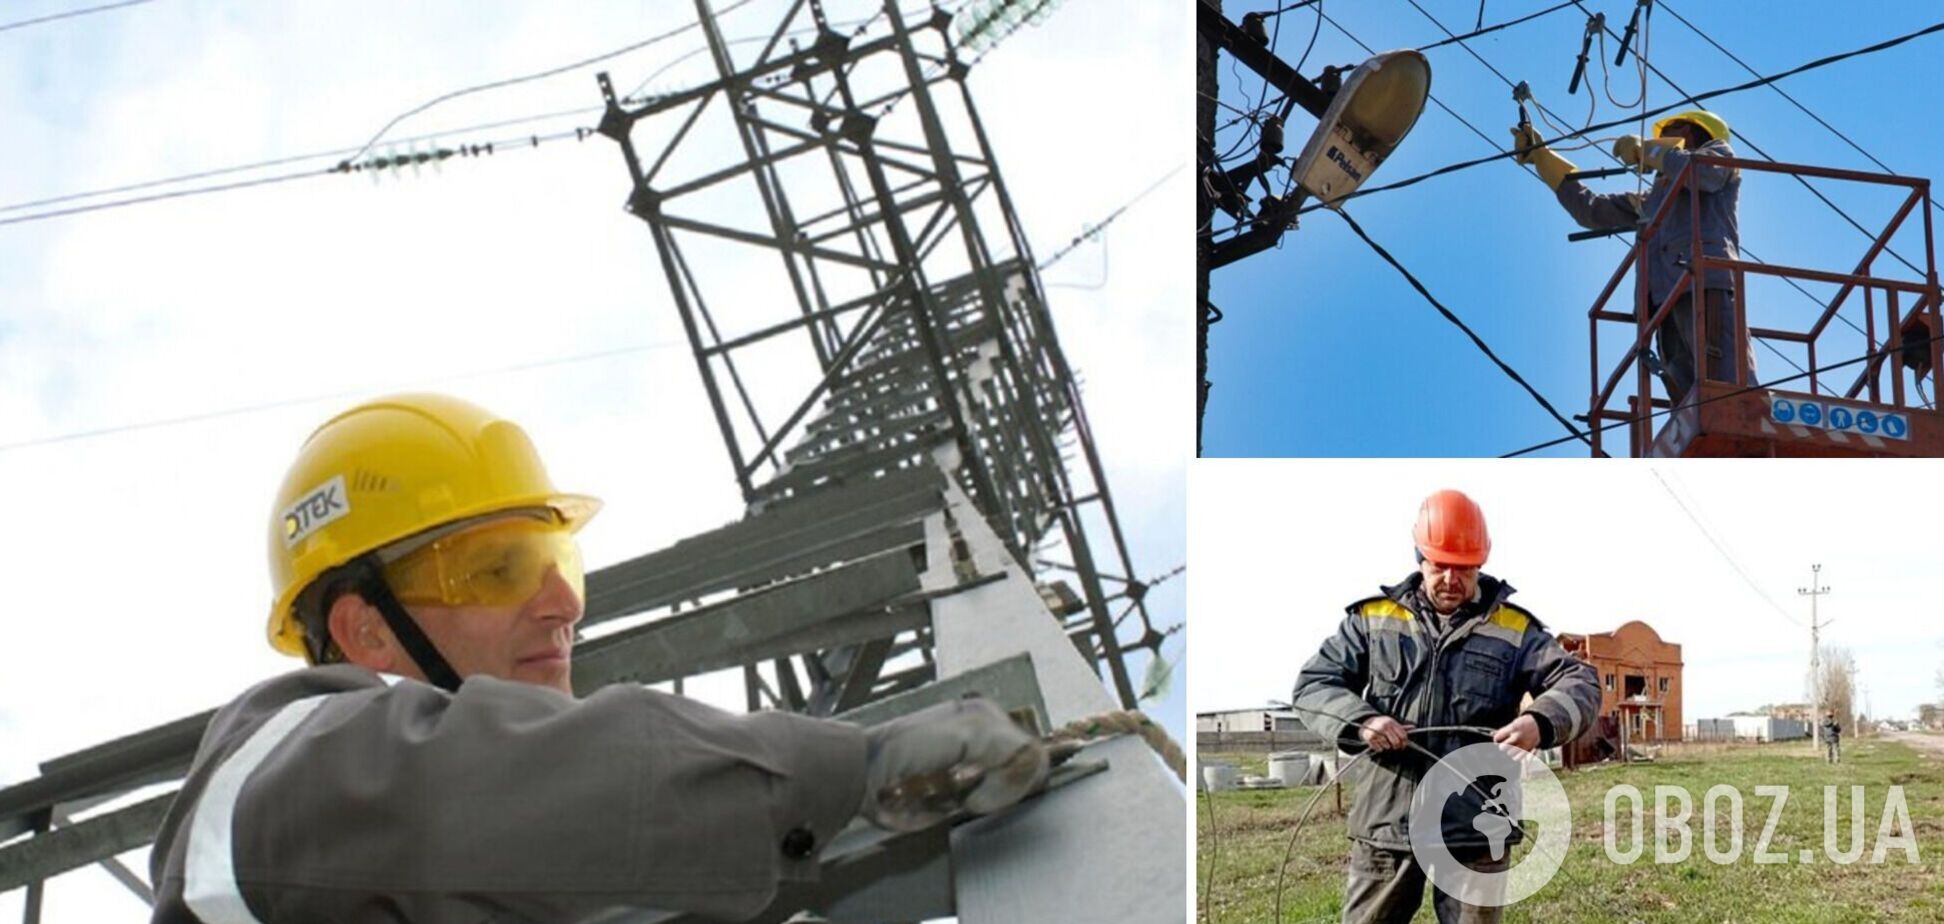 Энергетики ДТЭК вместе с ВСУ возвратили свет для 3 тысяч семей в Донецкой области